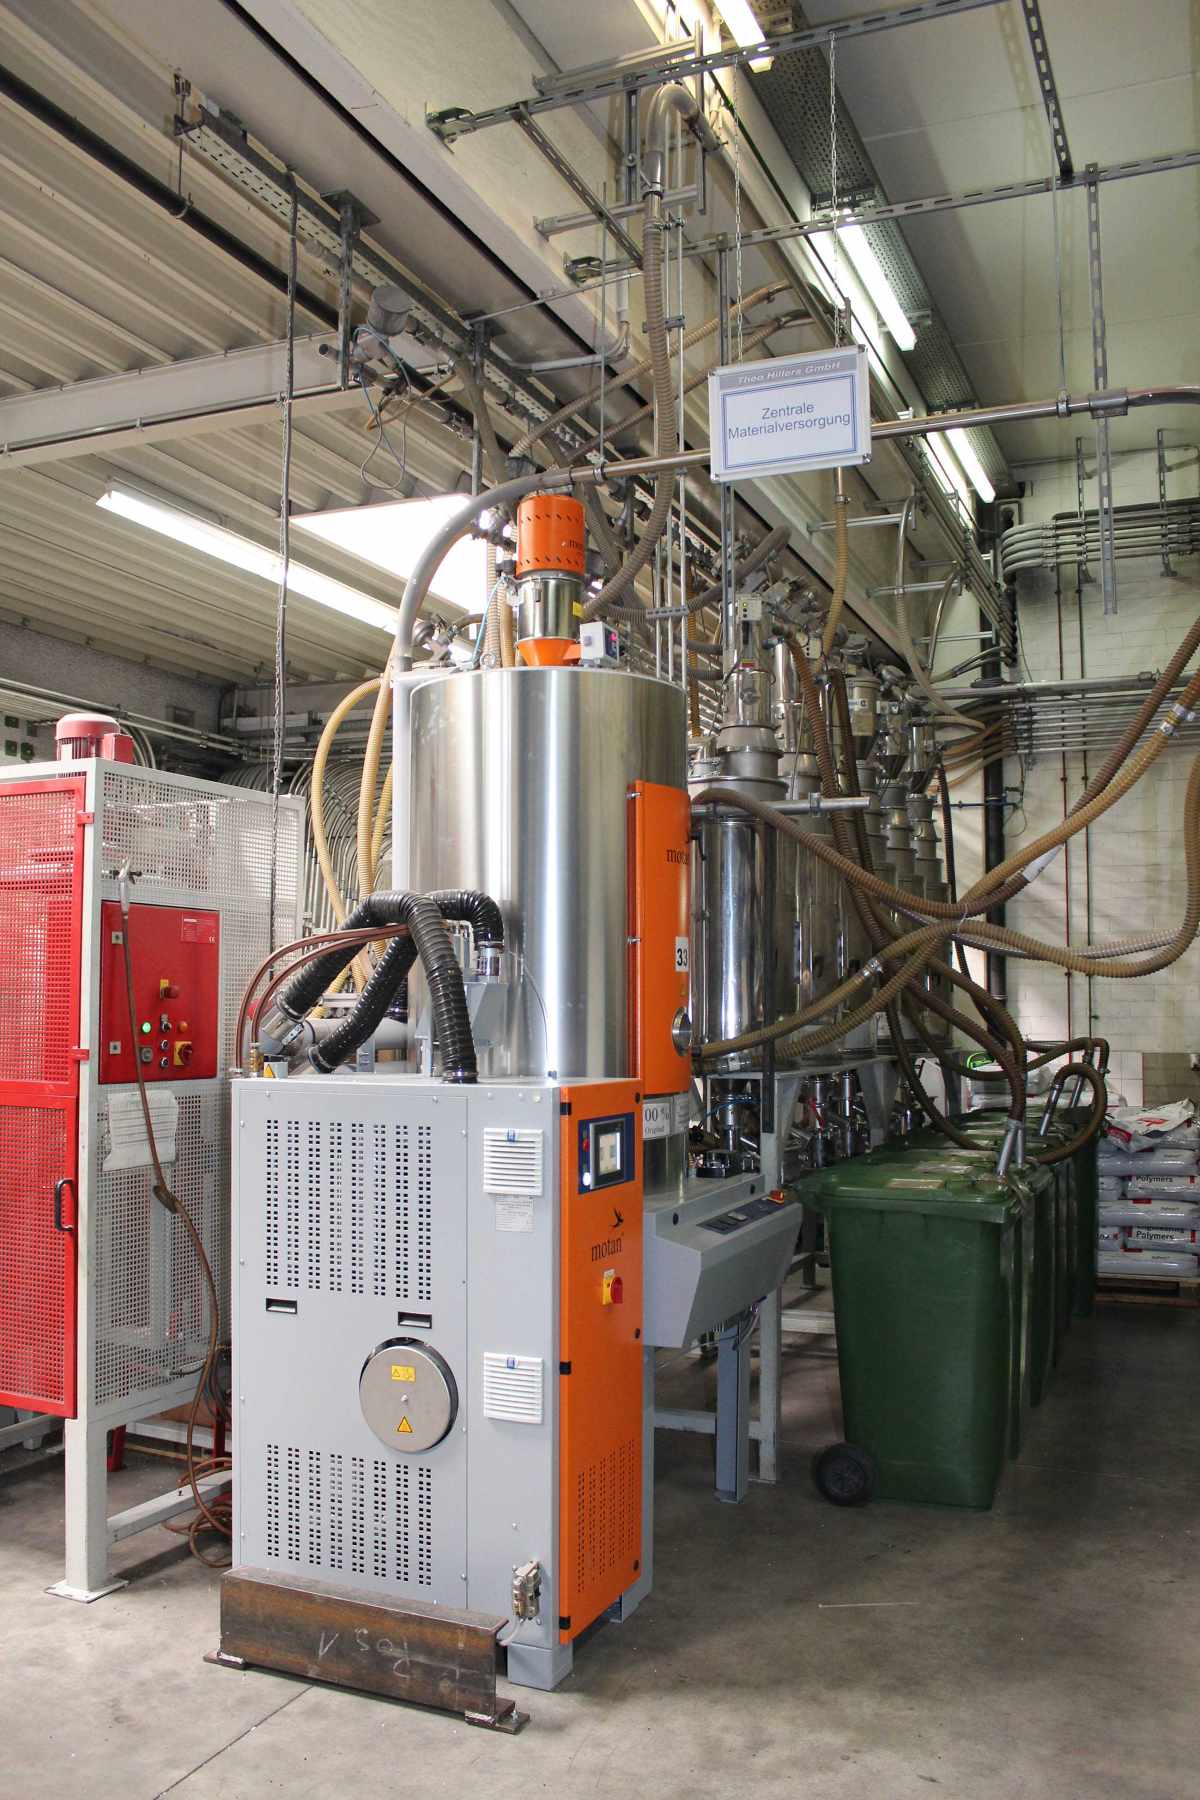 Vybaven automatickou nivelací teploty a rosného bodu (ATTN), reguluje generátor suchého vzduchu Luxor A 120 rosný bod procesního přívodního vzduchu s přesností ±1°C